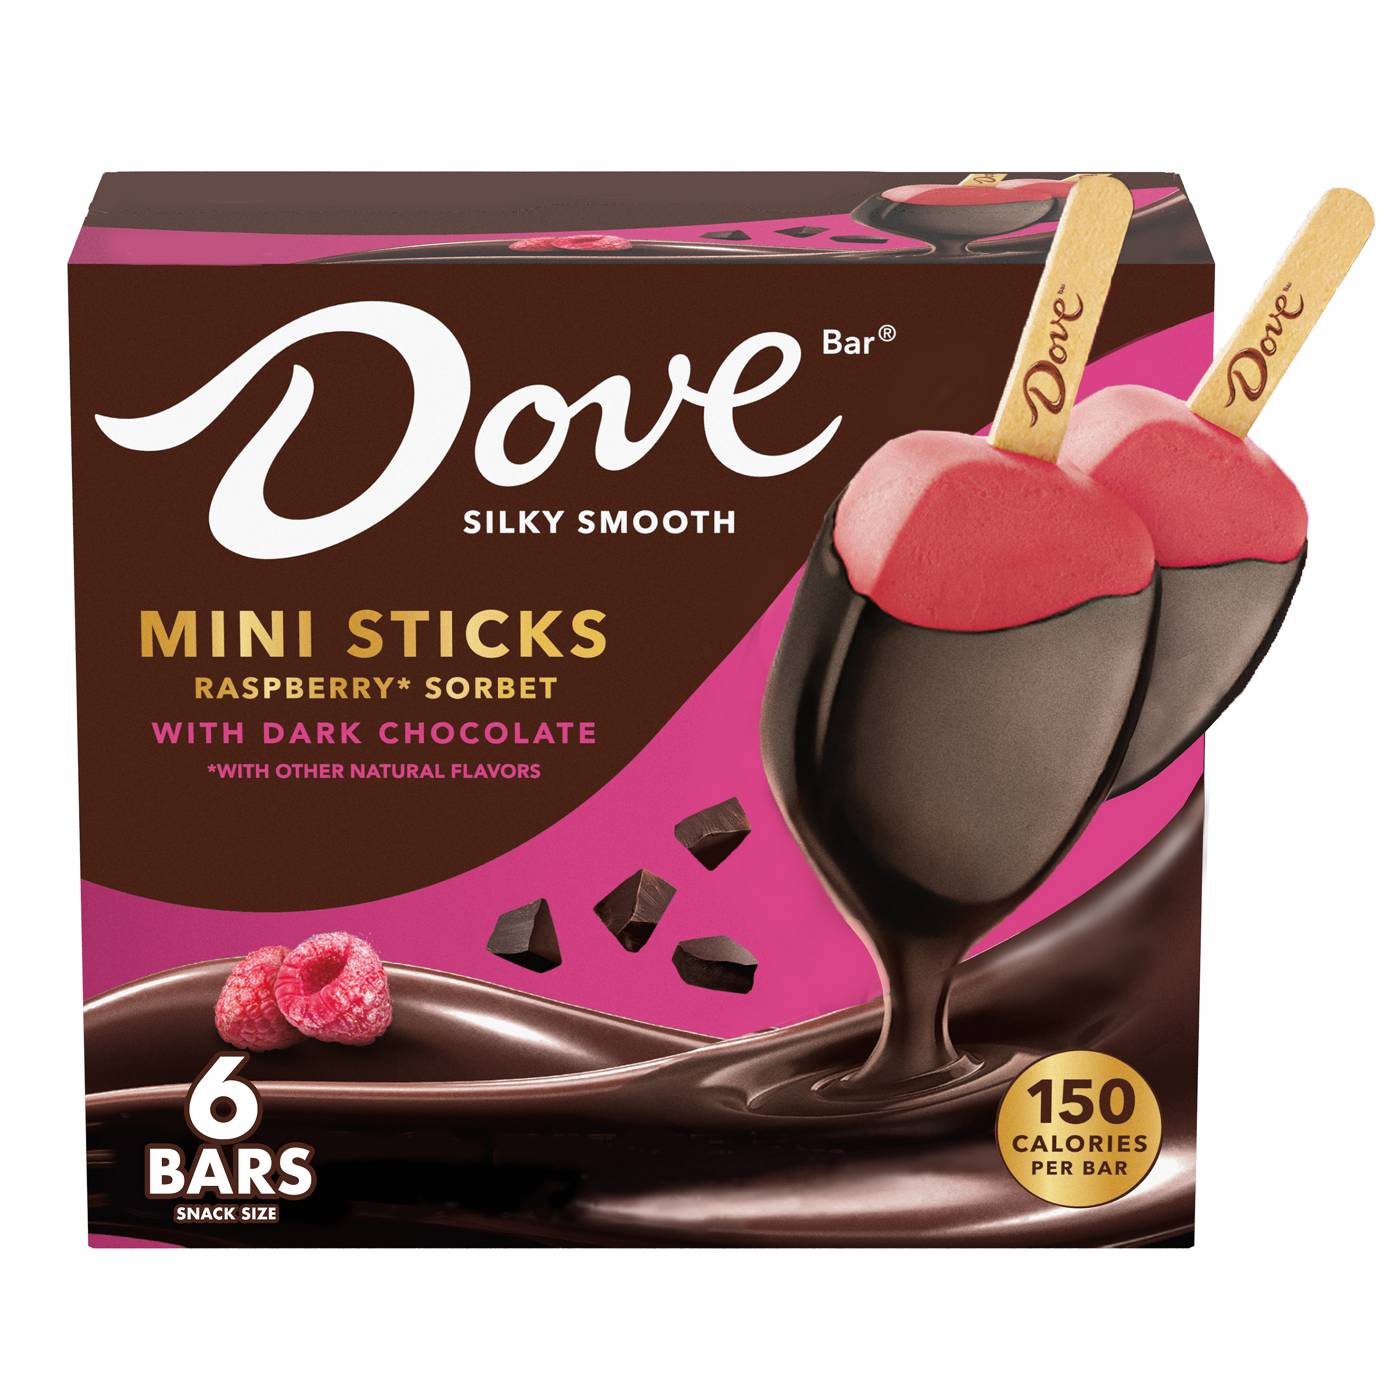 Dove Raspberry Sorbet with Dark Chocolate Ice Cream Bars; image 1 of 2